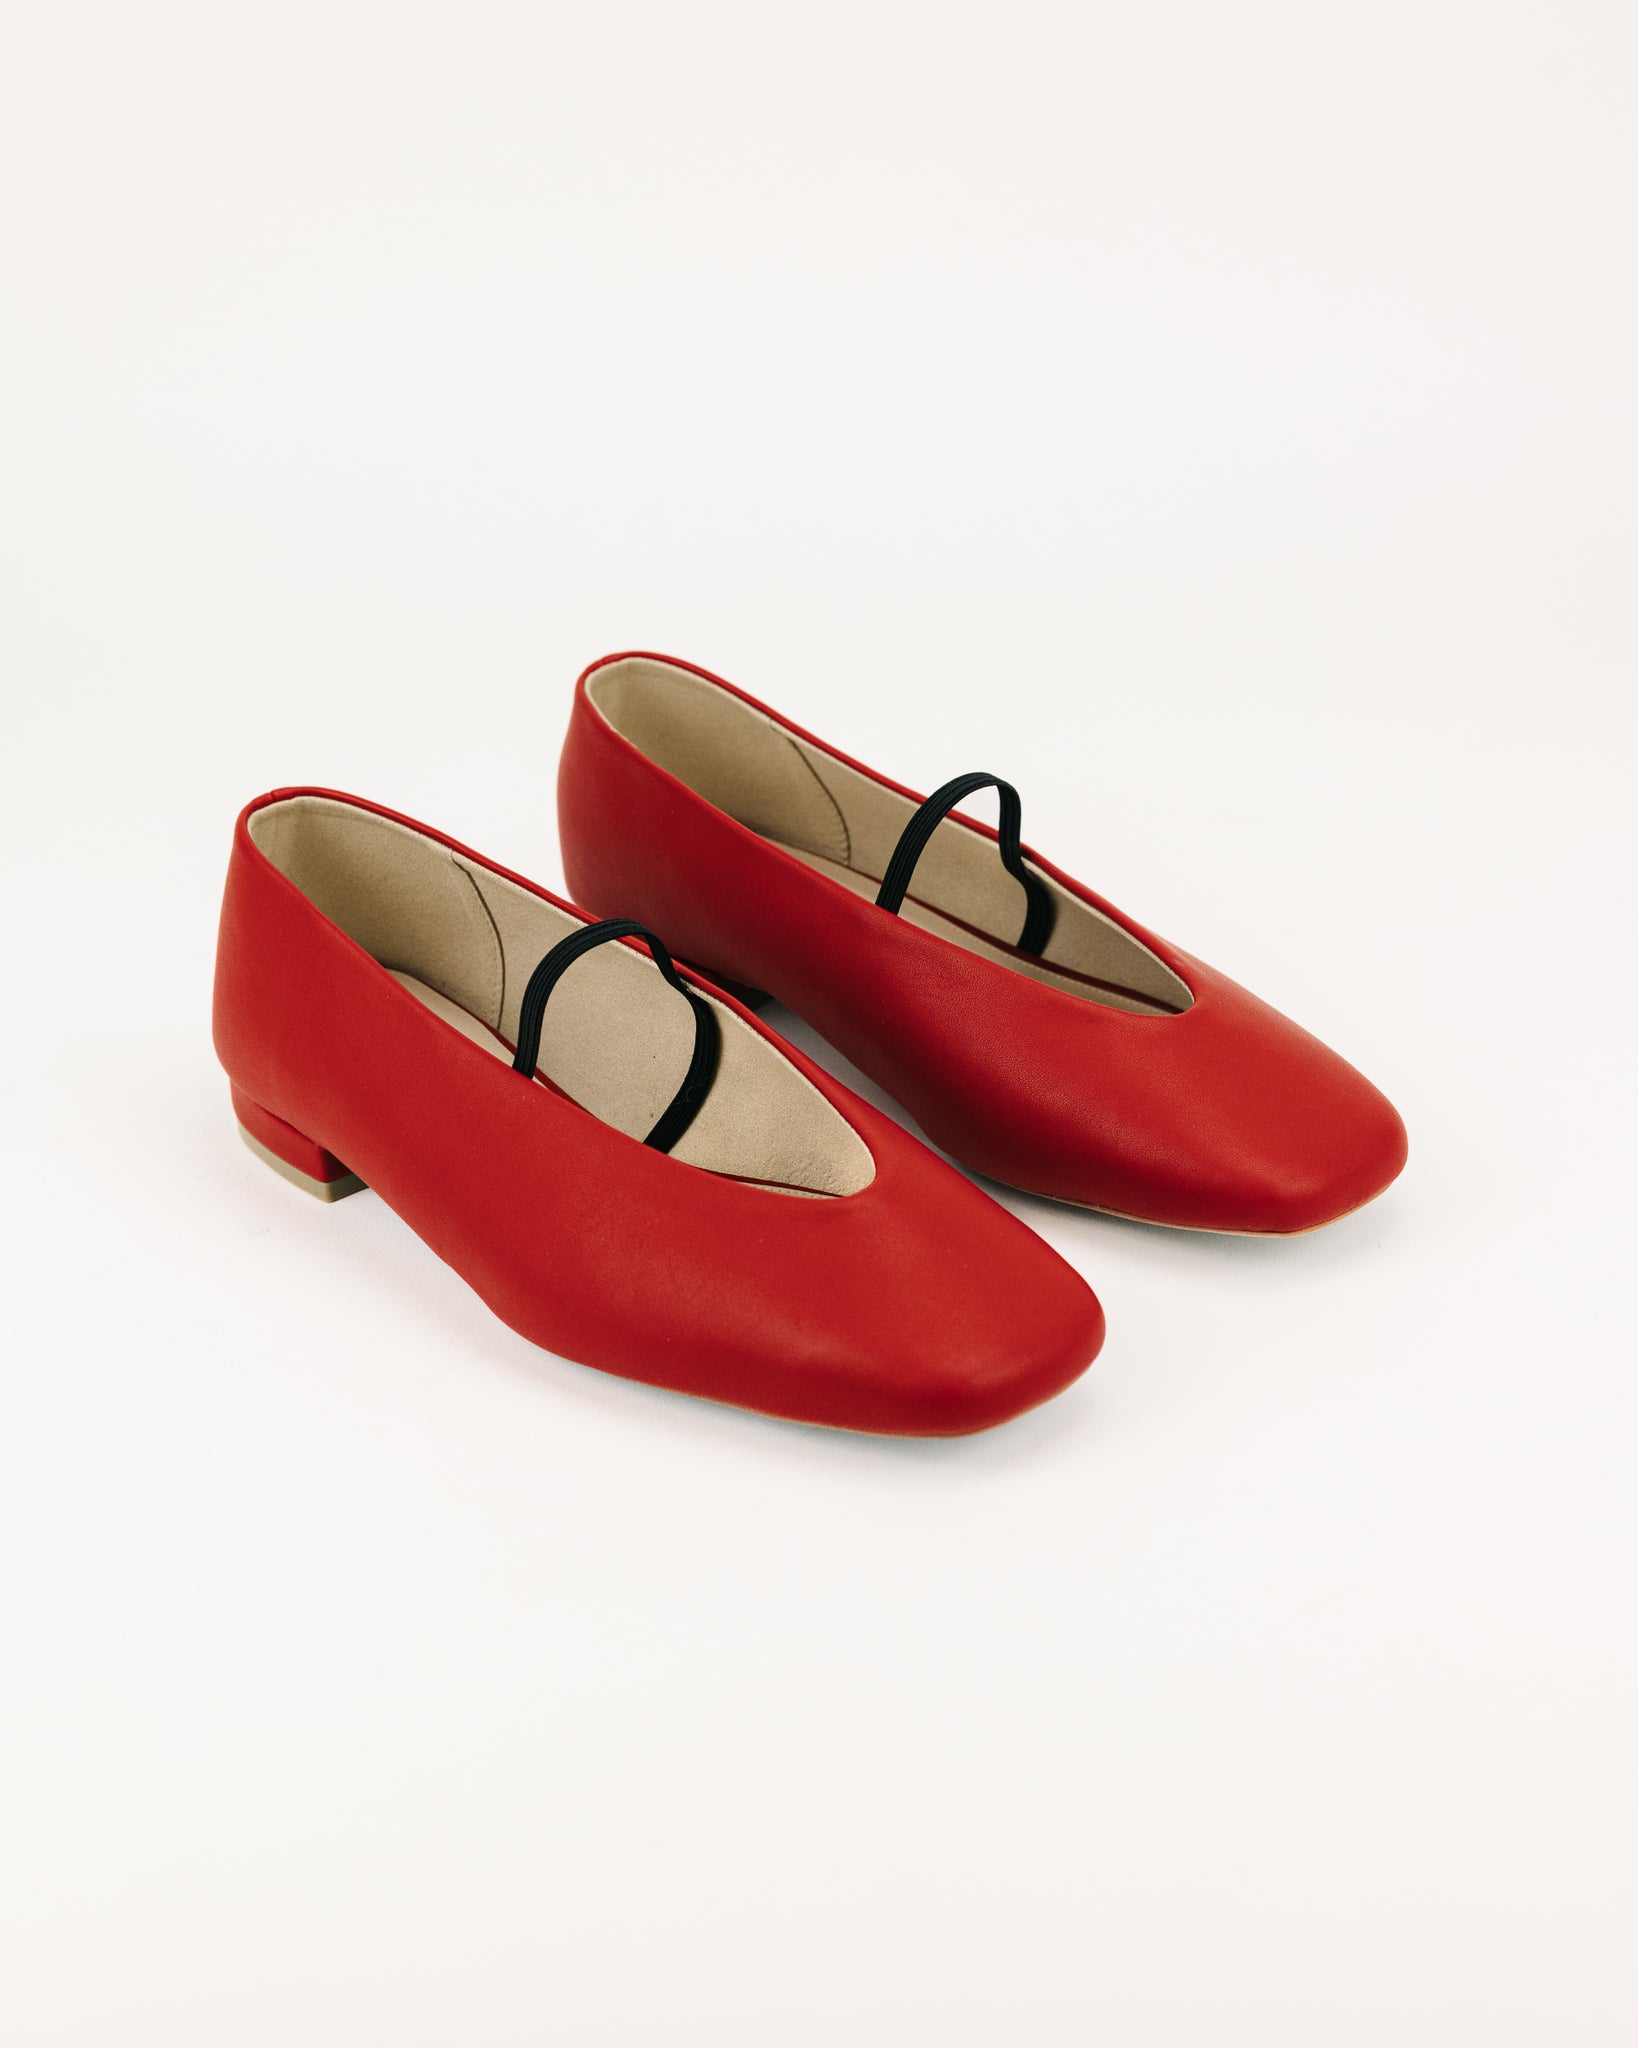 Debi Square Toe Loafers (Red)